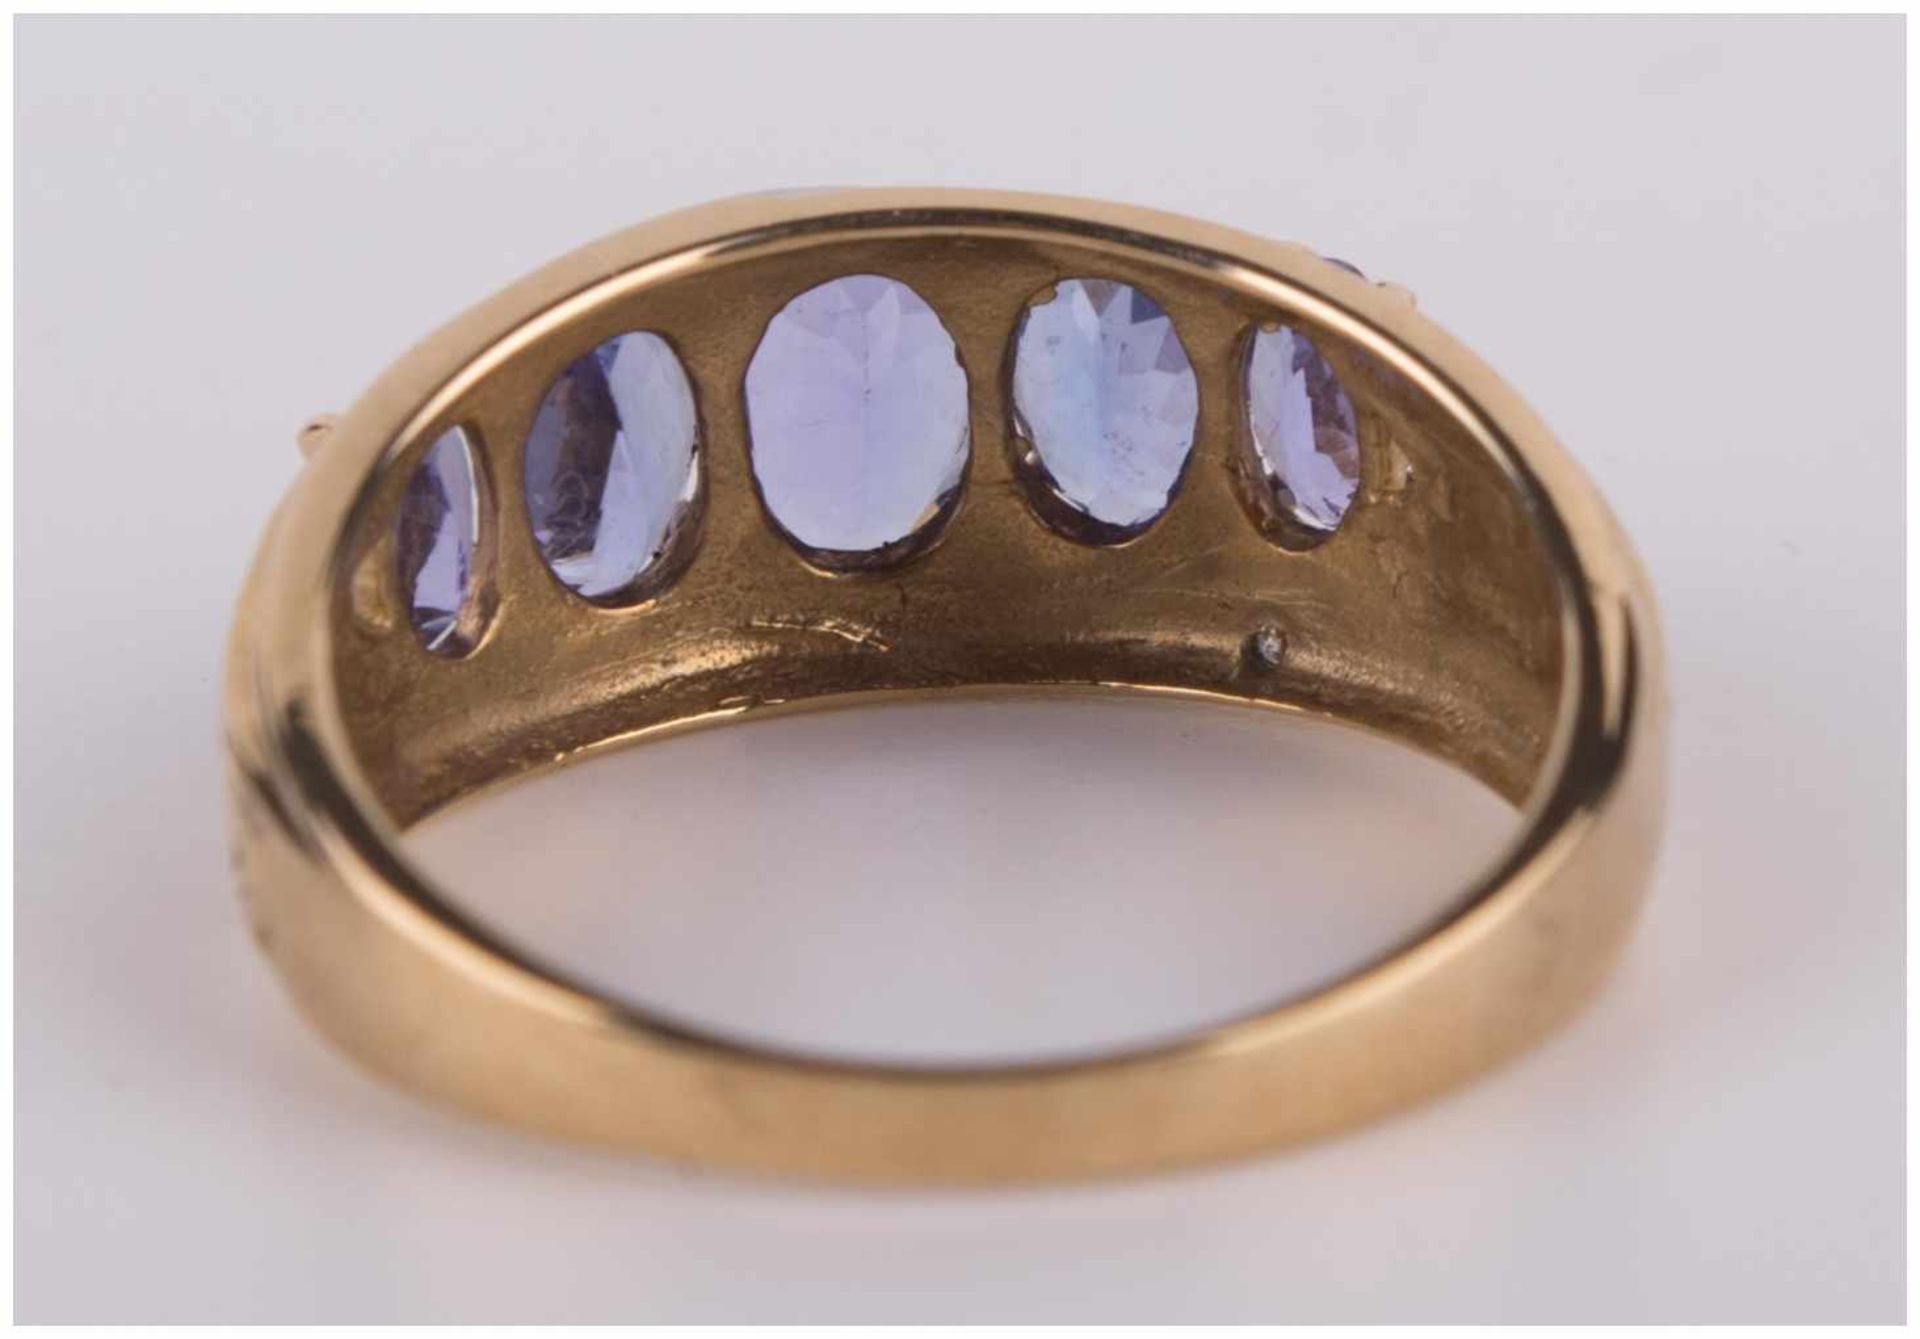 Tansanitring / Tanzanite gold ring - GG 375/000, besetzt mit 5 Steinen zusammen [...] - Bild 7 aus 8